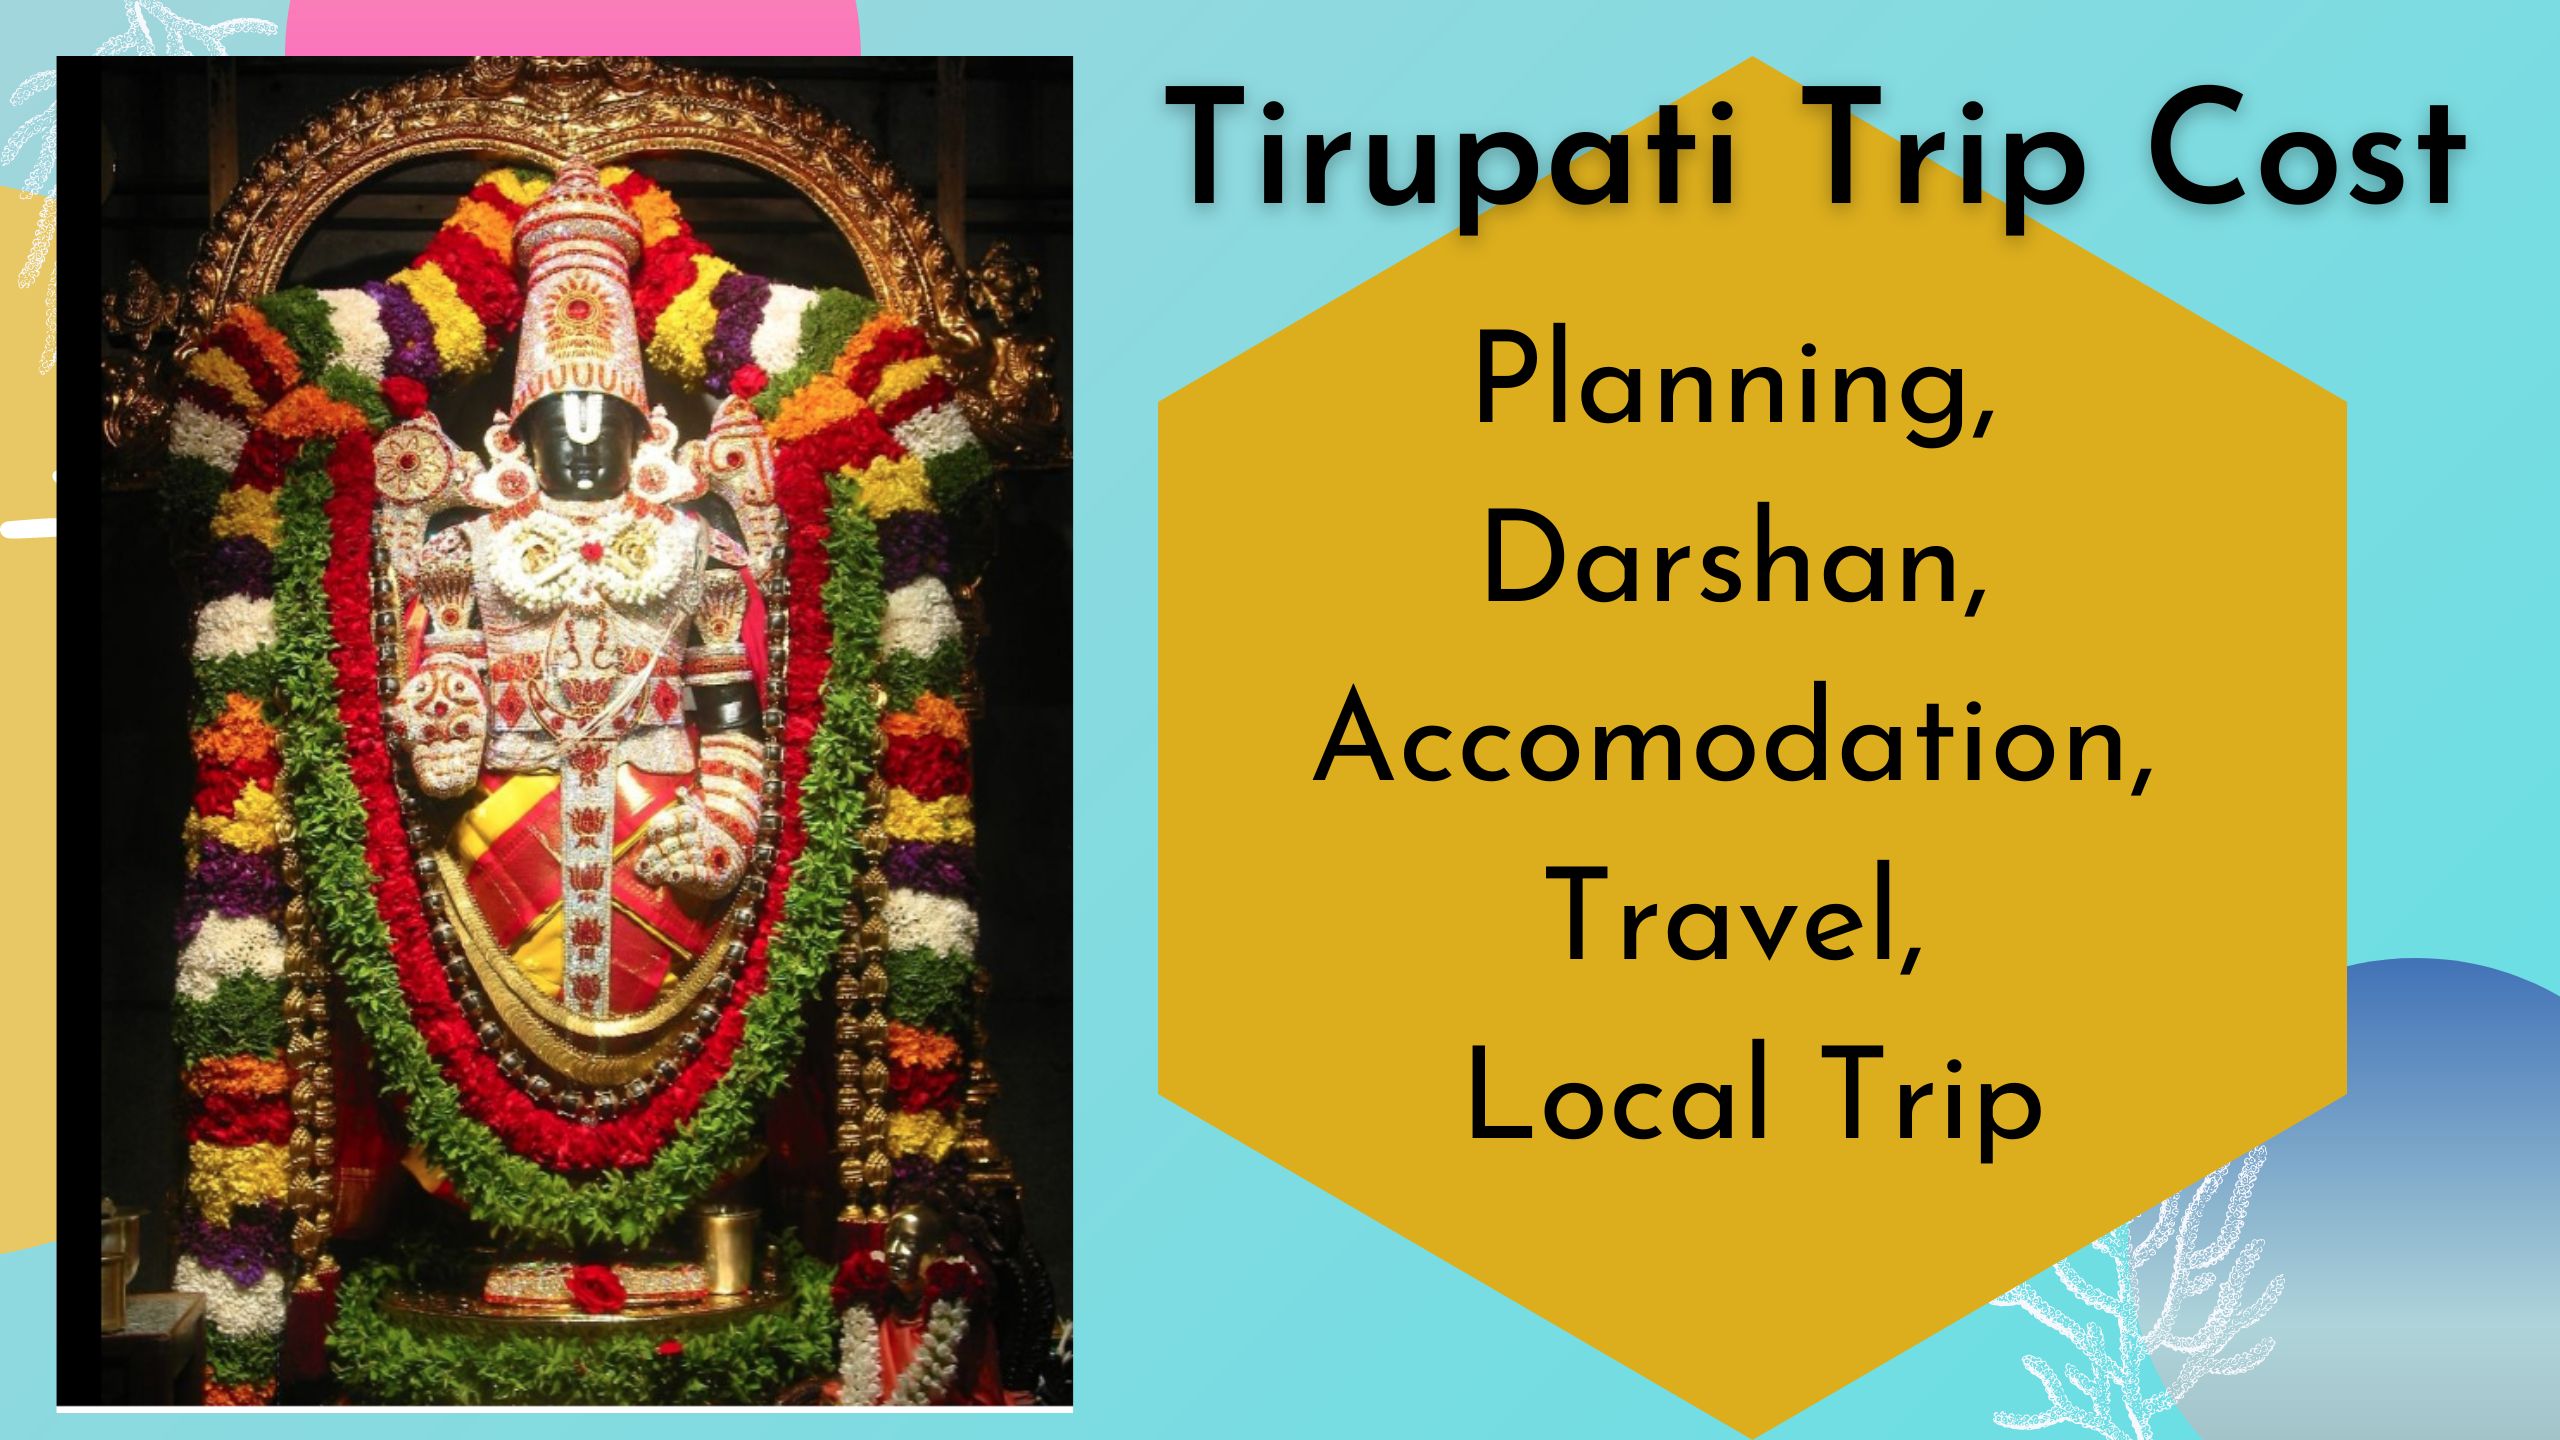 tirupati trip cost of all items